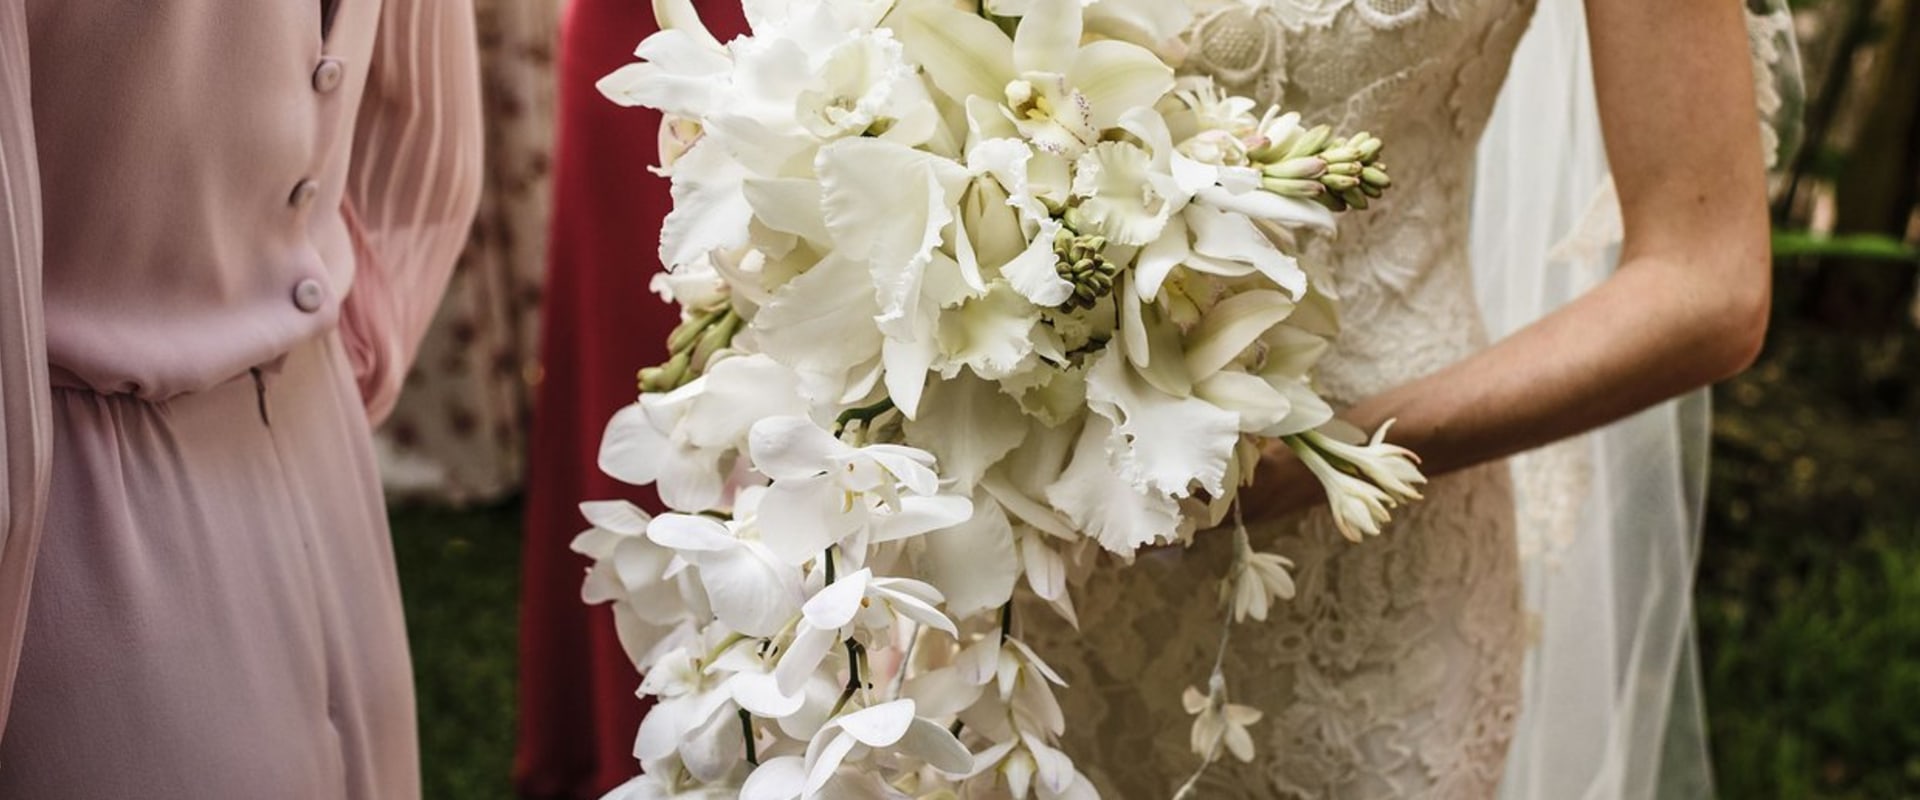 Unique Flower Arrangements for Weddings